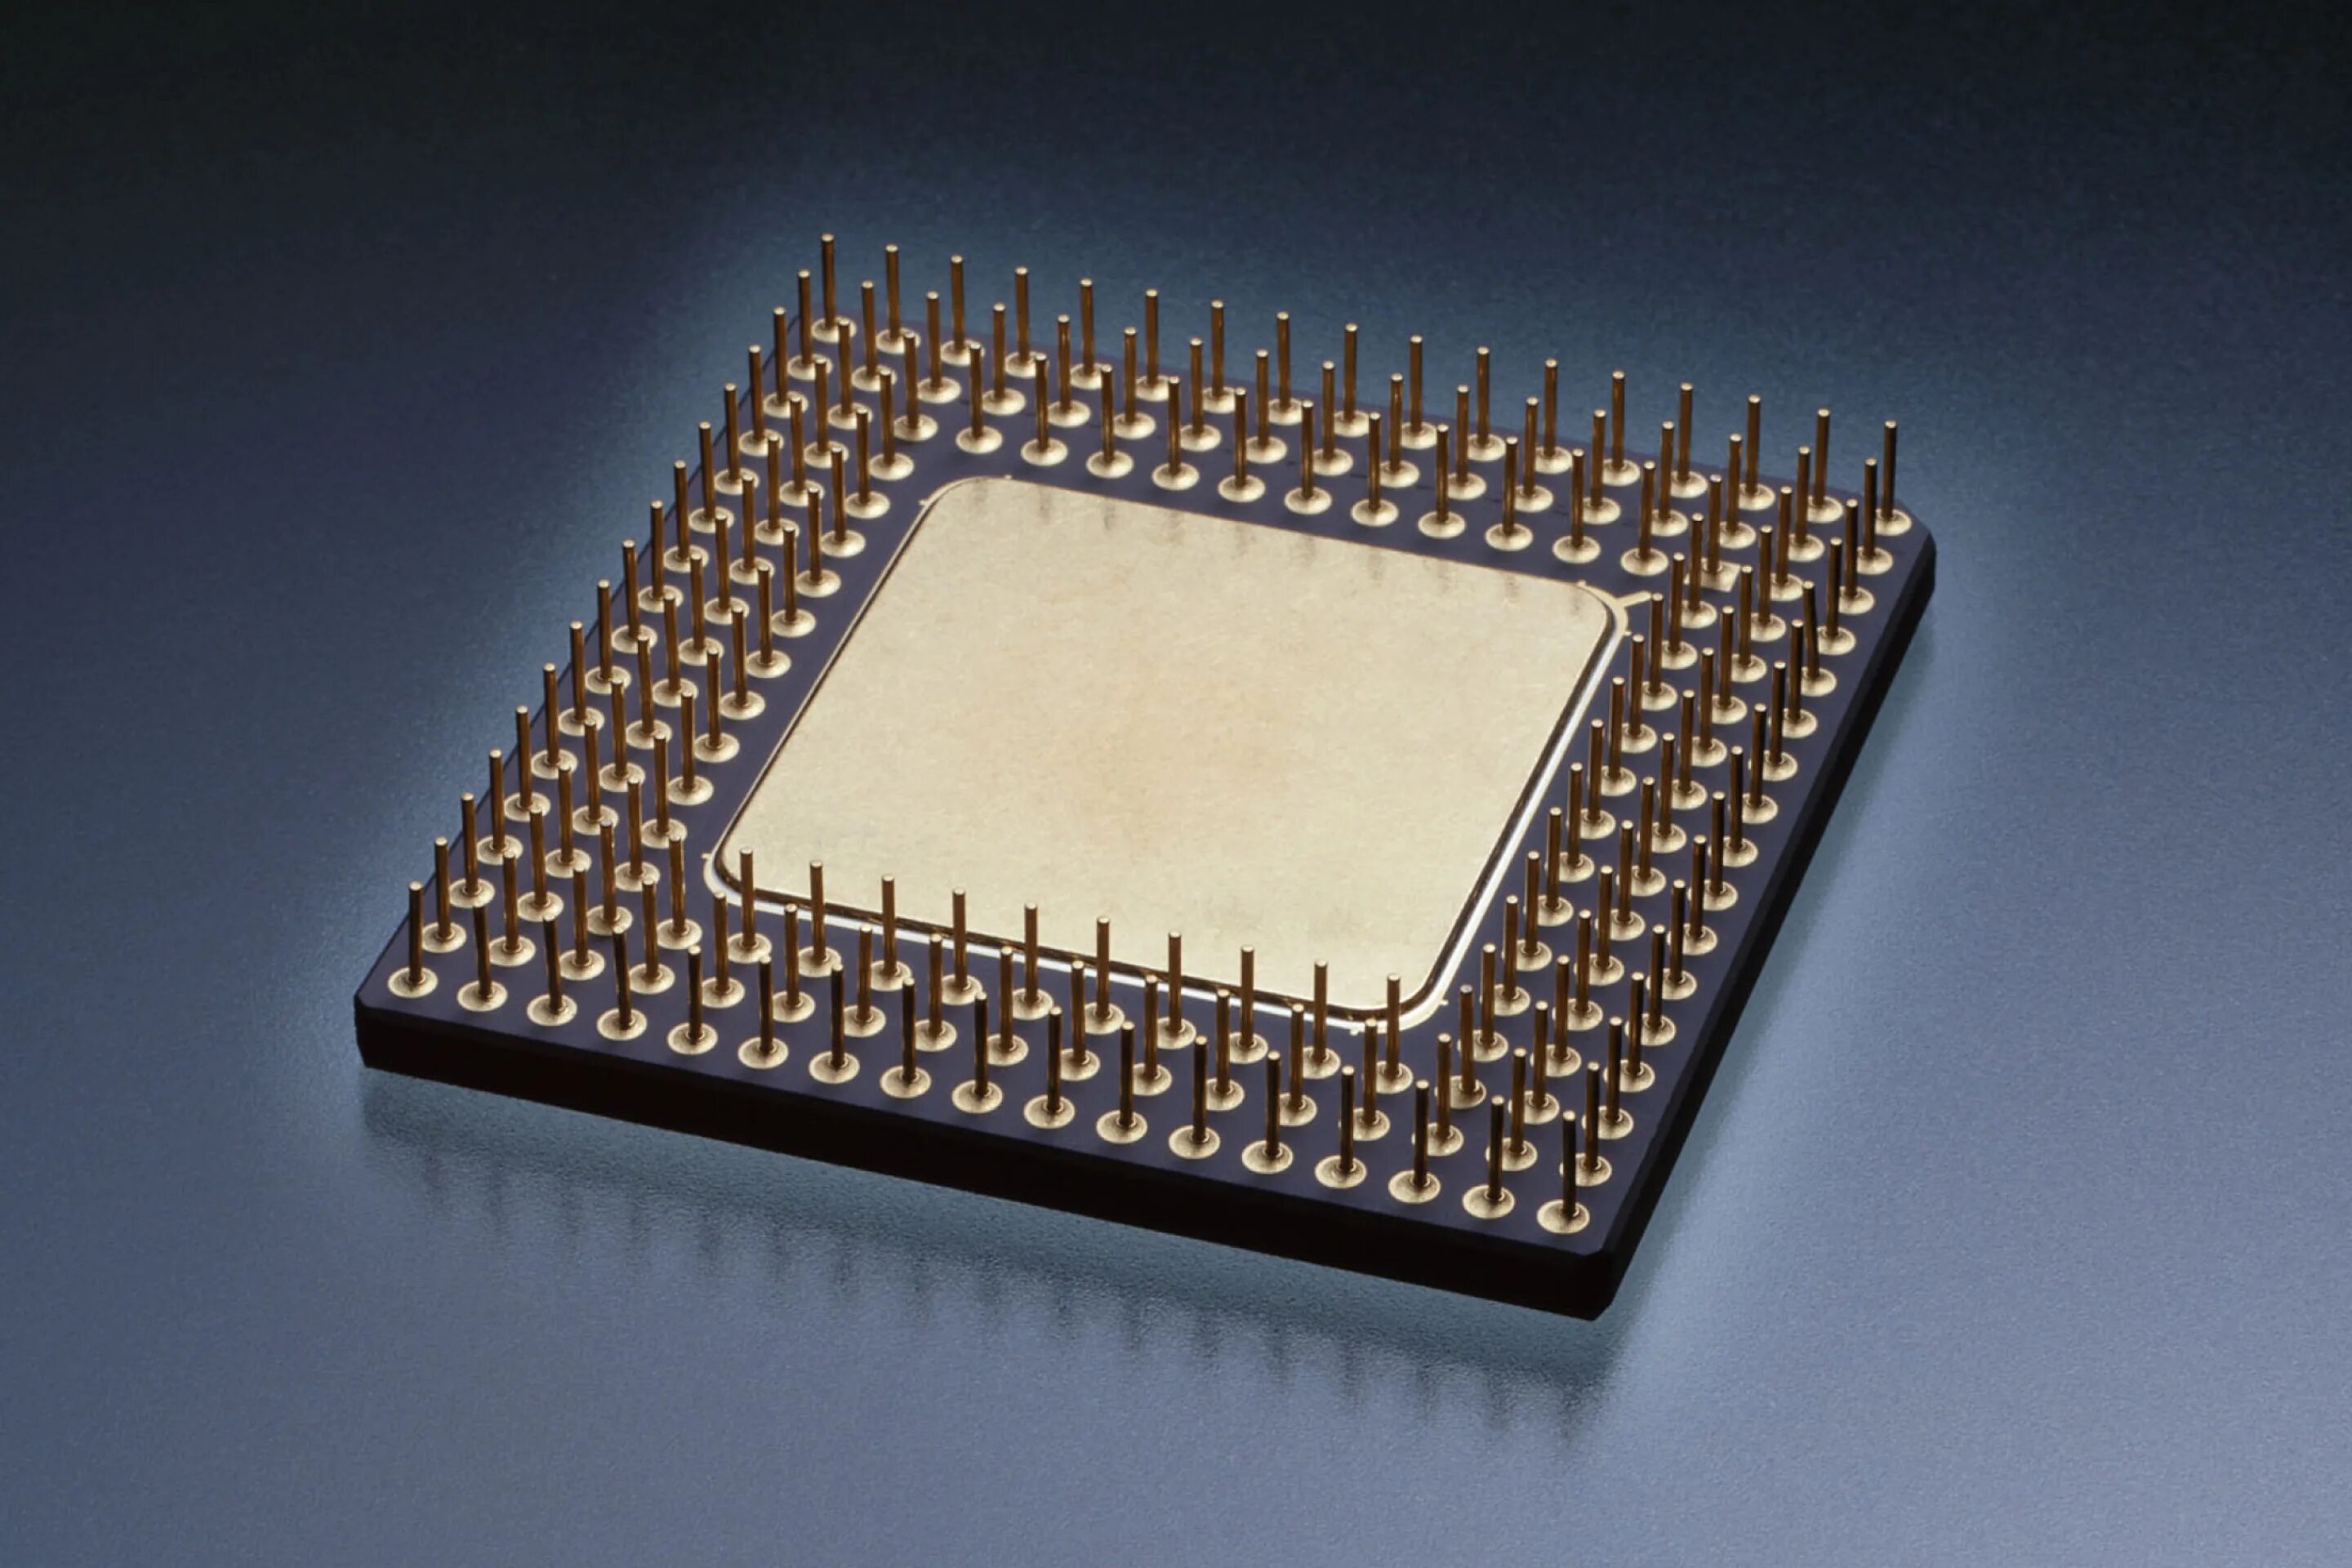 Скопировать процессор. Процессор (CPU) микропроцессор. Многокристальный процессор АМД. Микропроцессор 1811. Микропроцессор 1818.